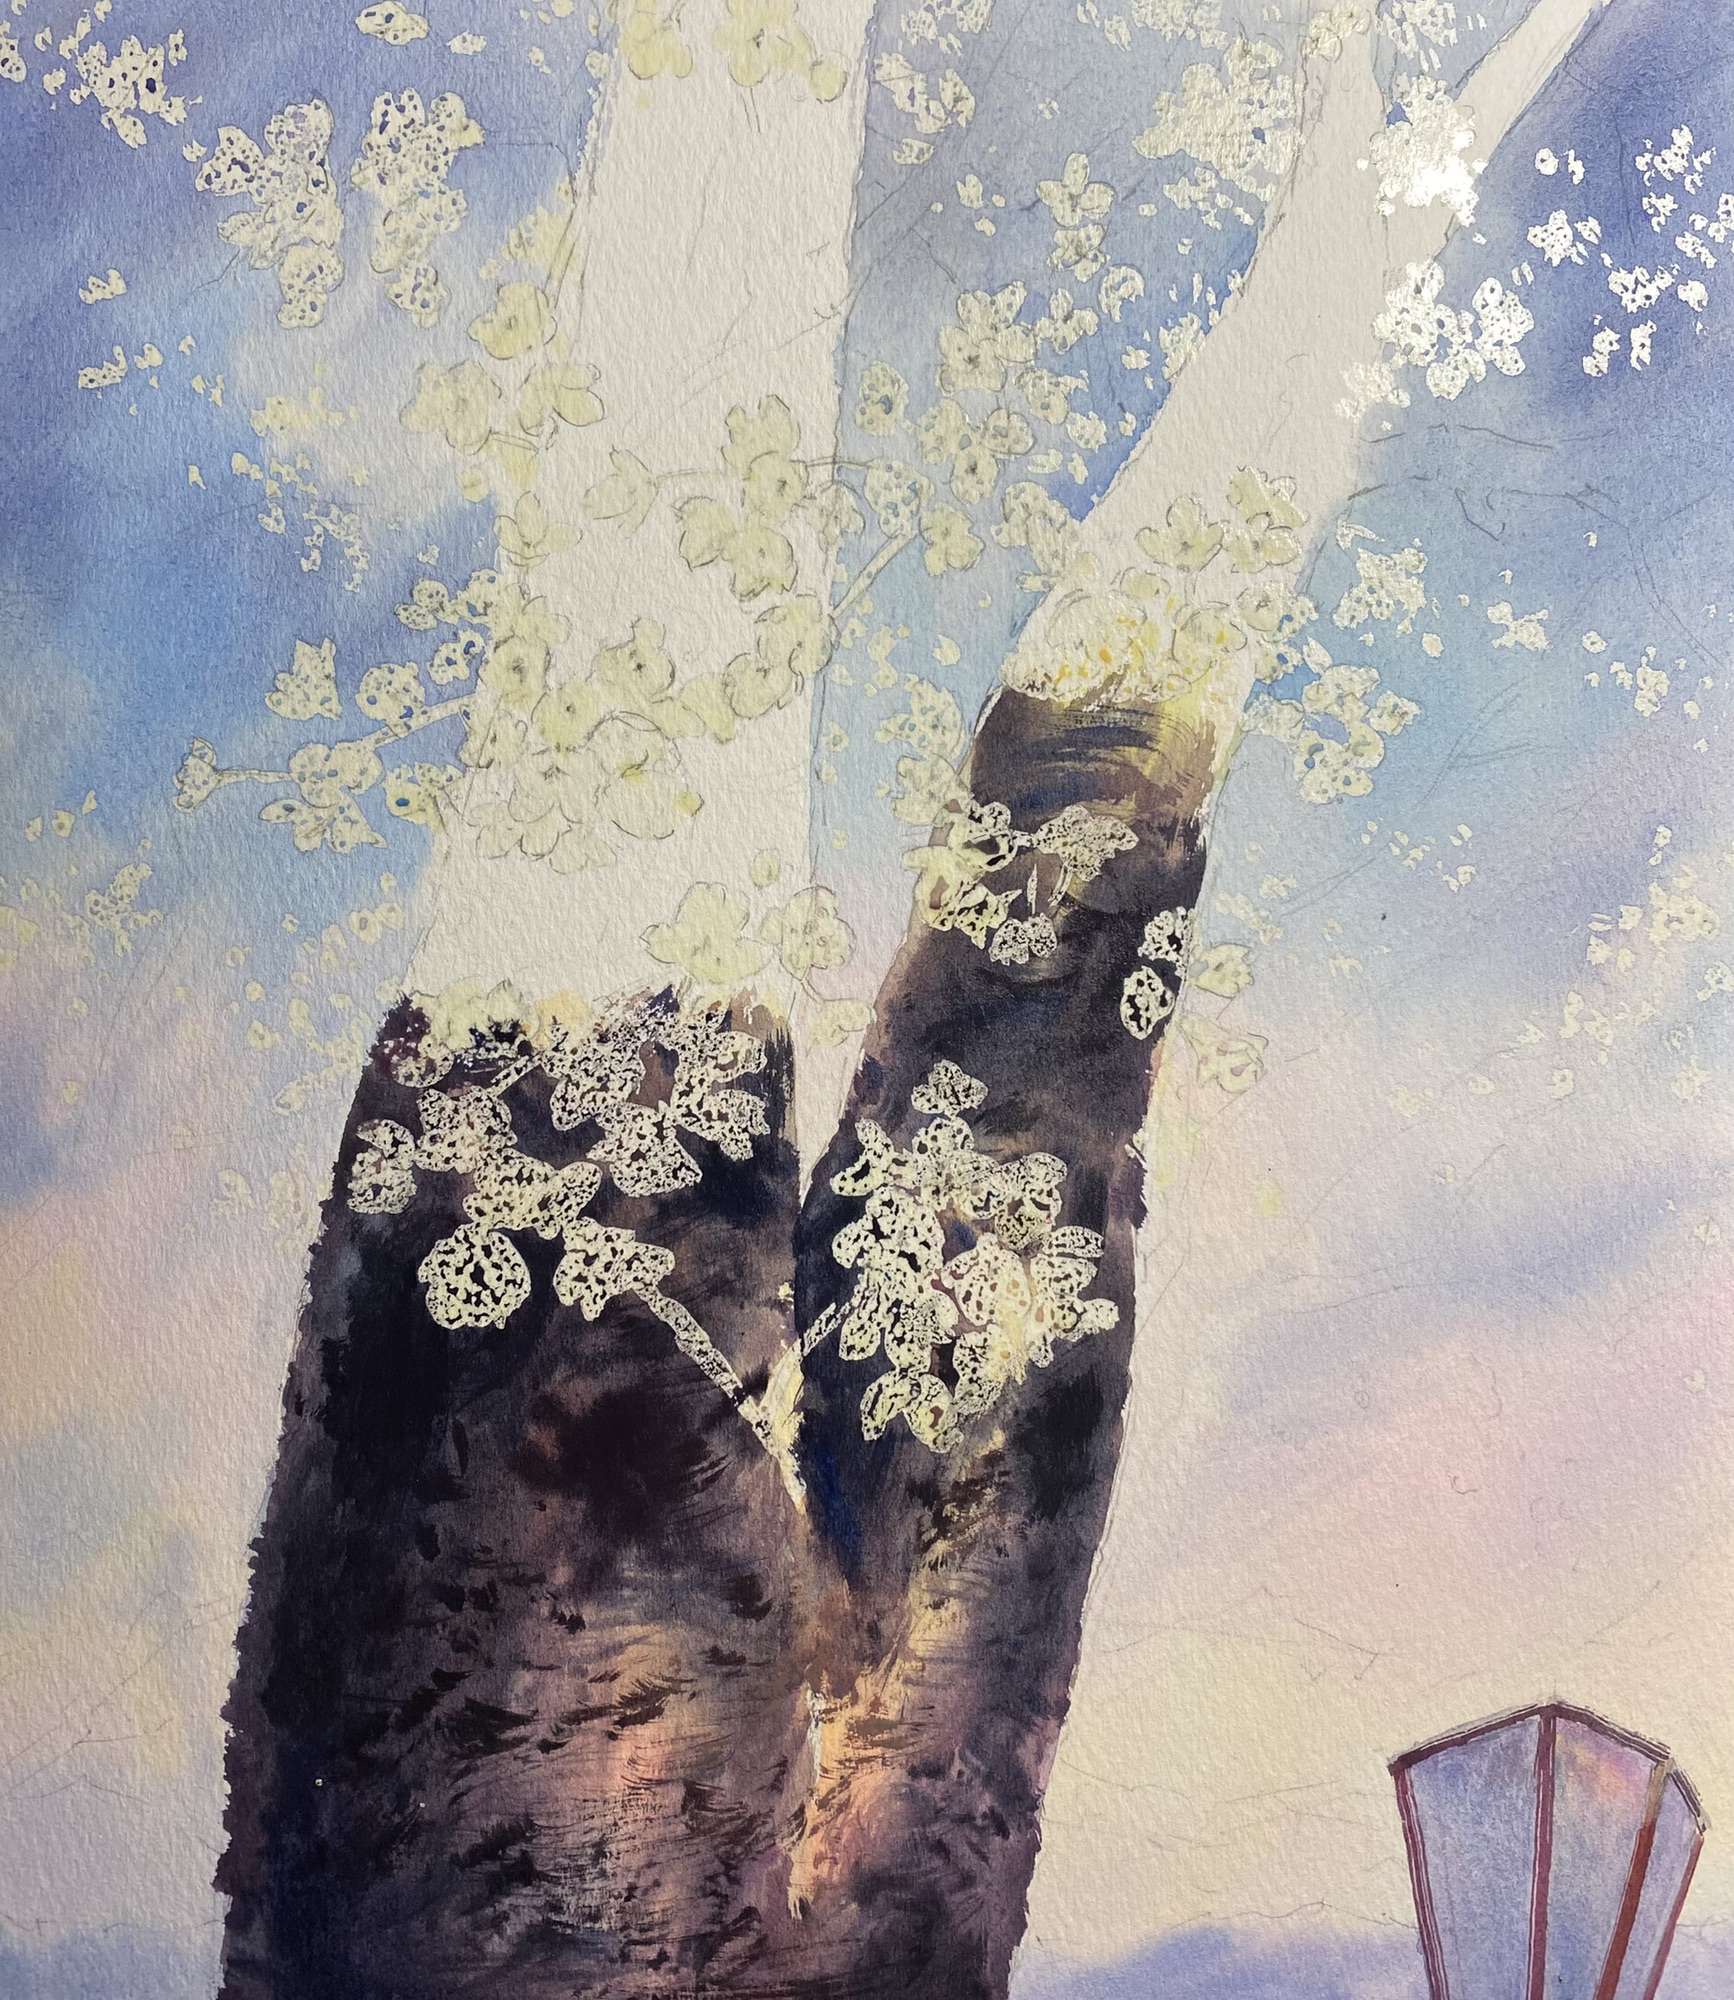 桜の水彩画の描き方 作者東有達 | 新潟絵画教室AZUMAs こども・美大 